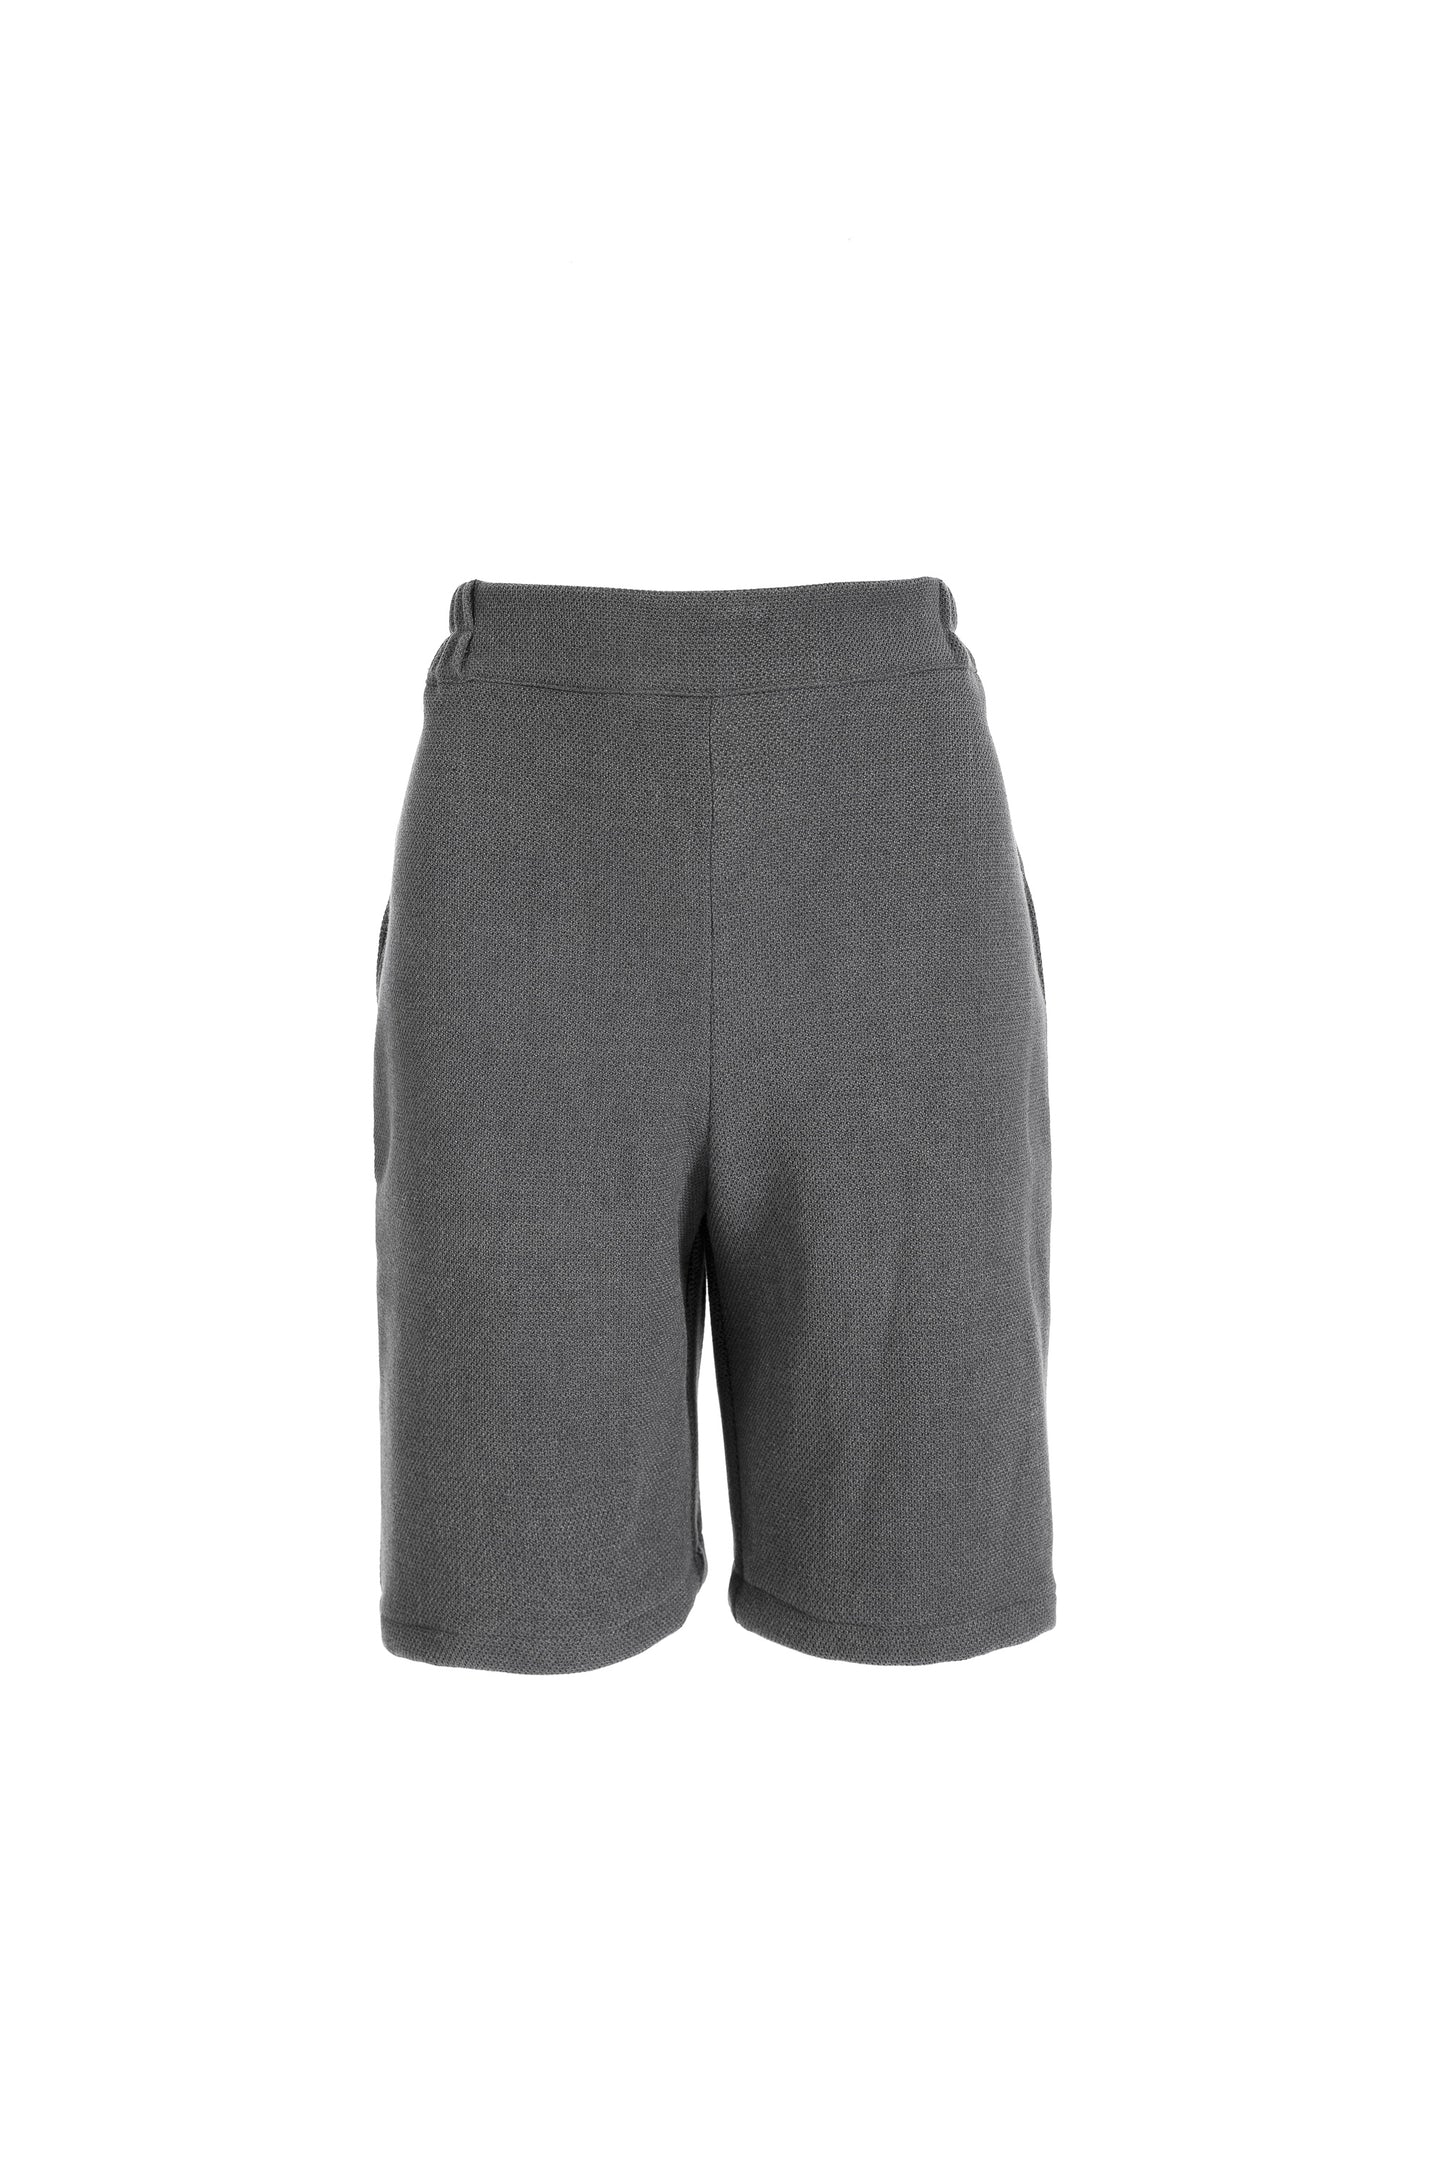 Nature | gray shorts